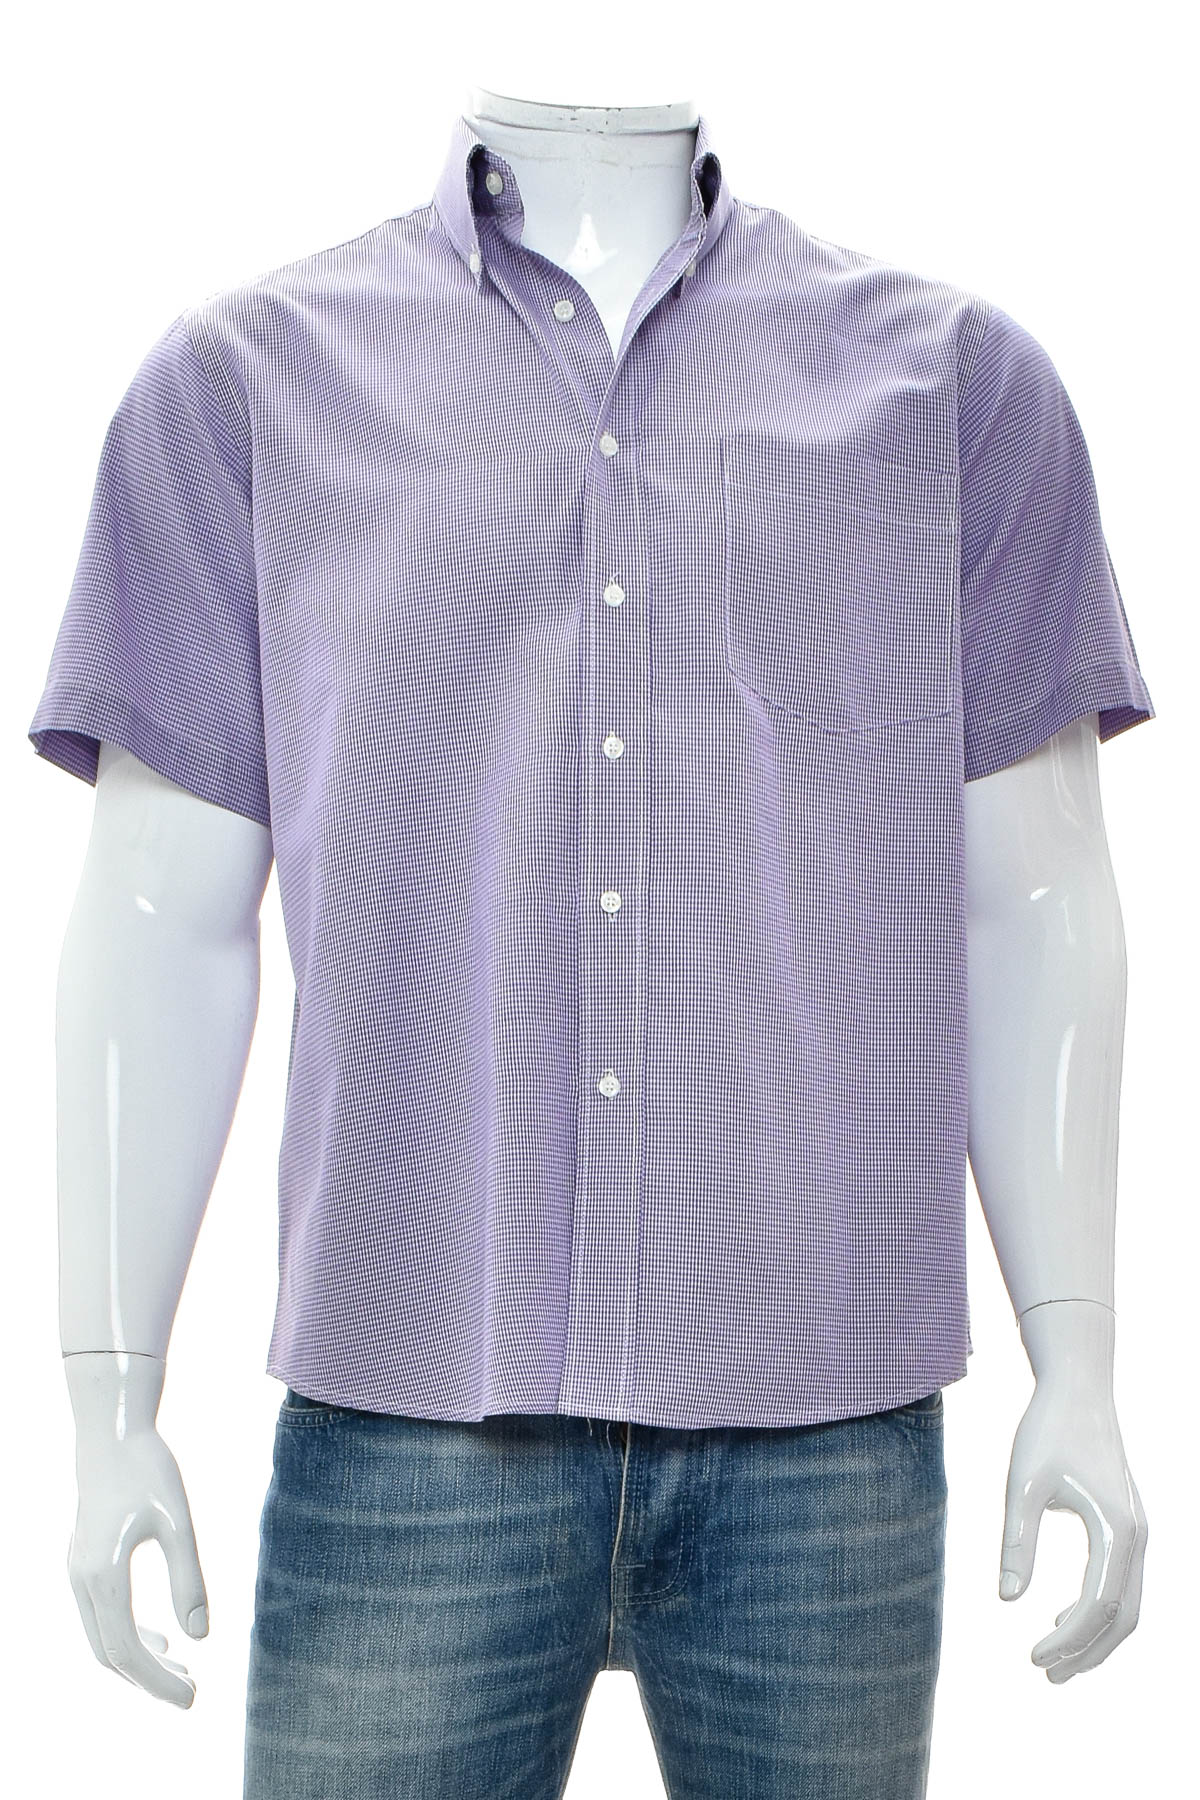 Ανδρικό πουκάμισο - Secolo - 0